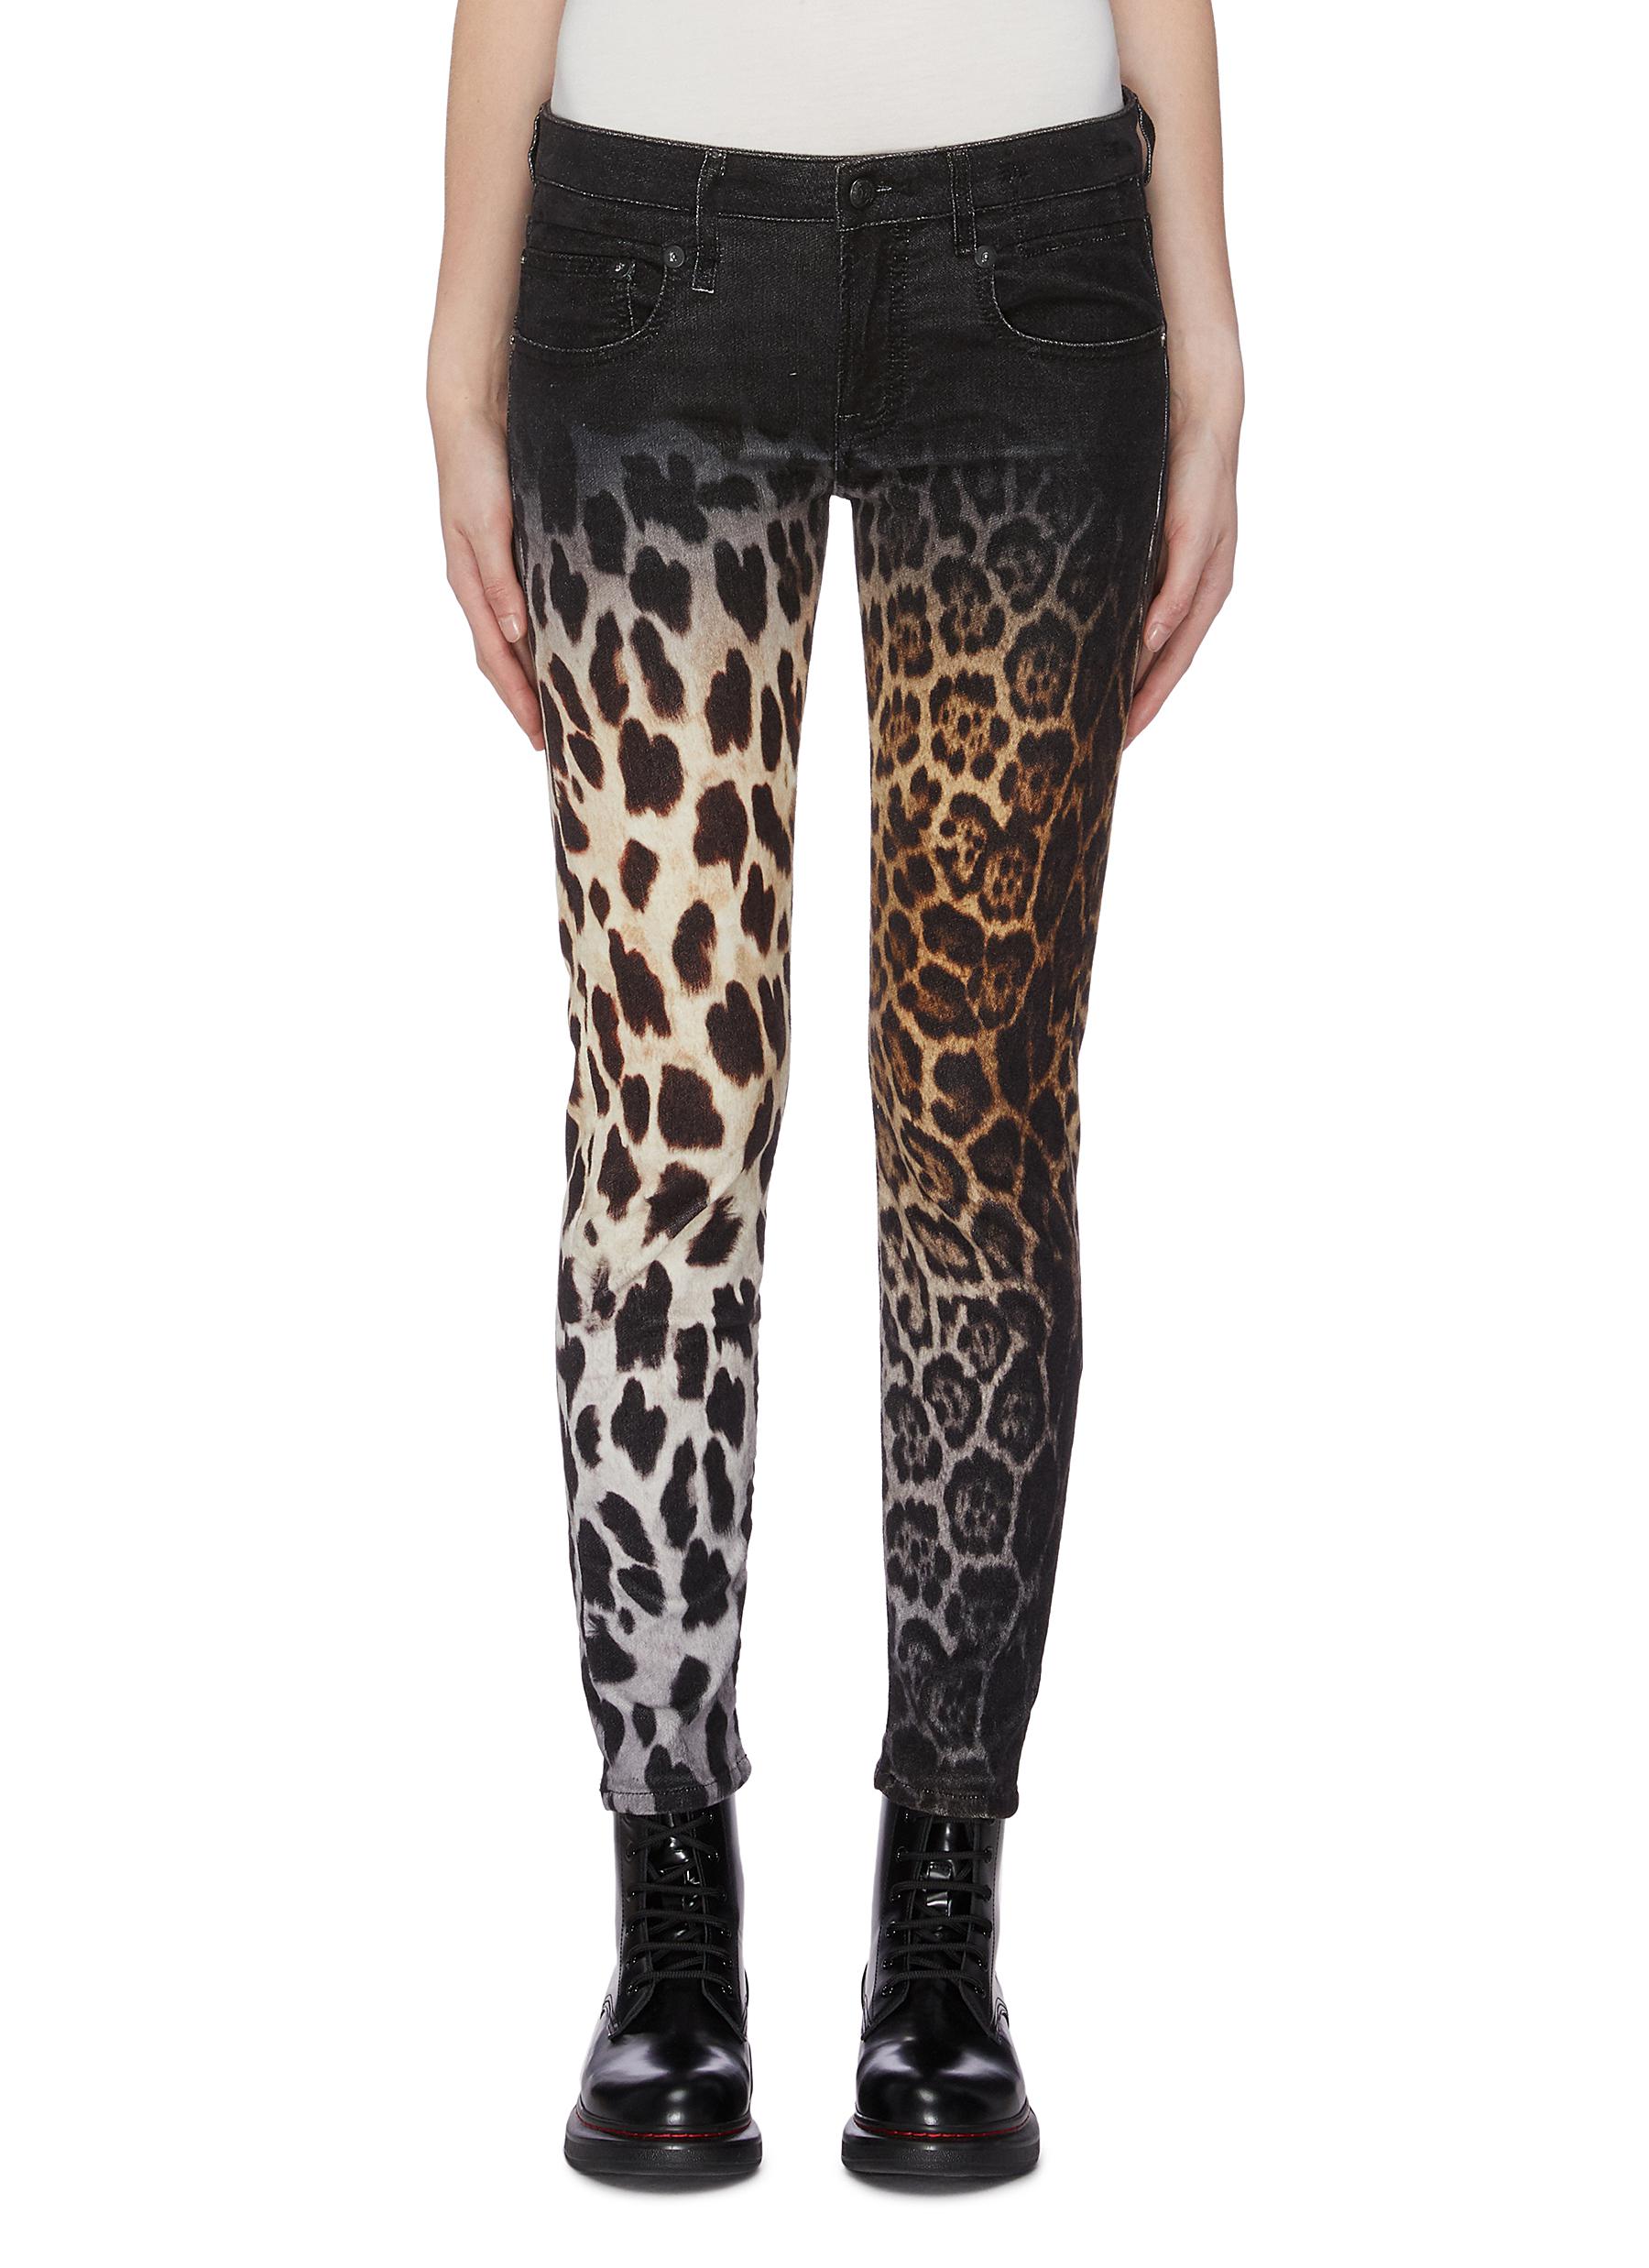 Leopard Boy skinny jeans by R13